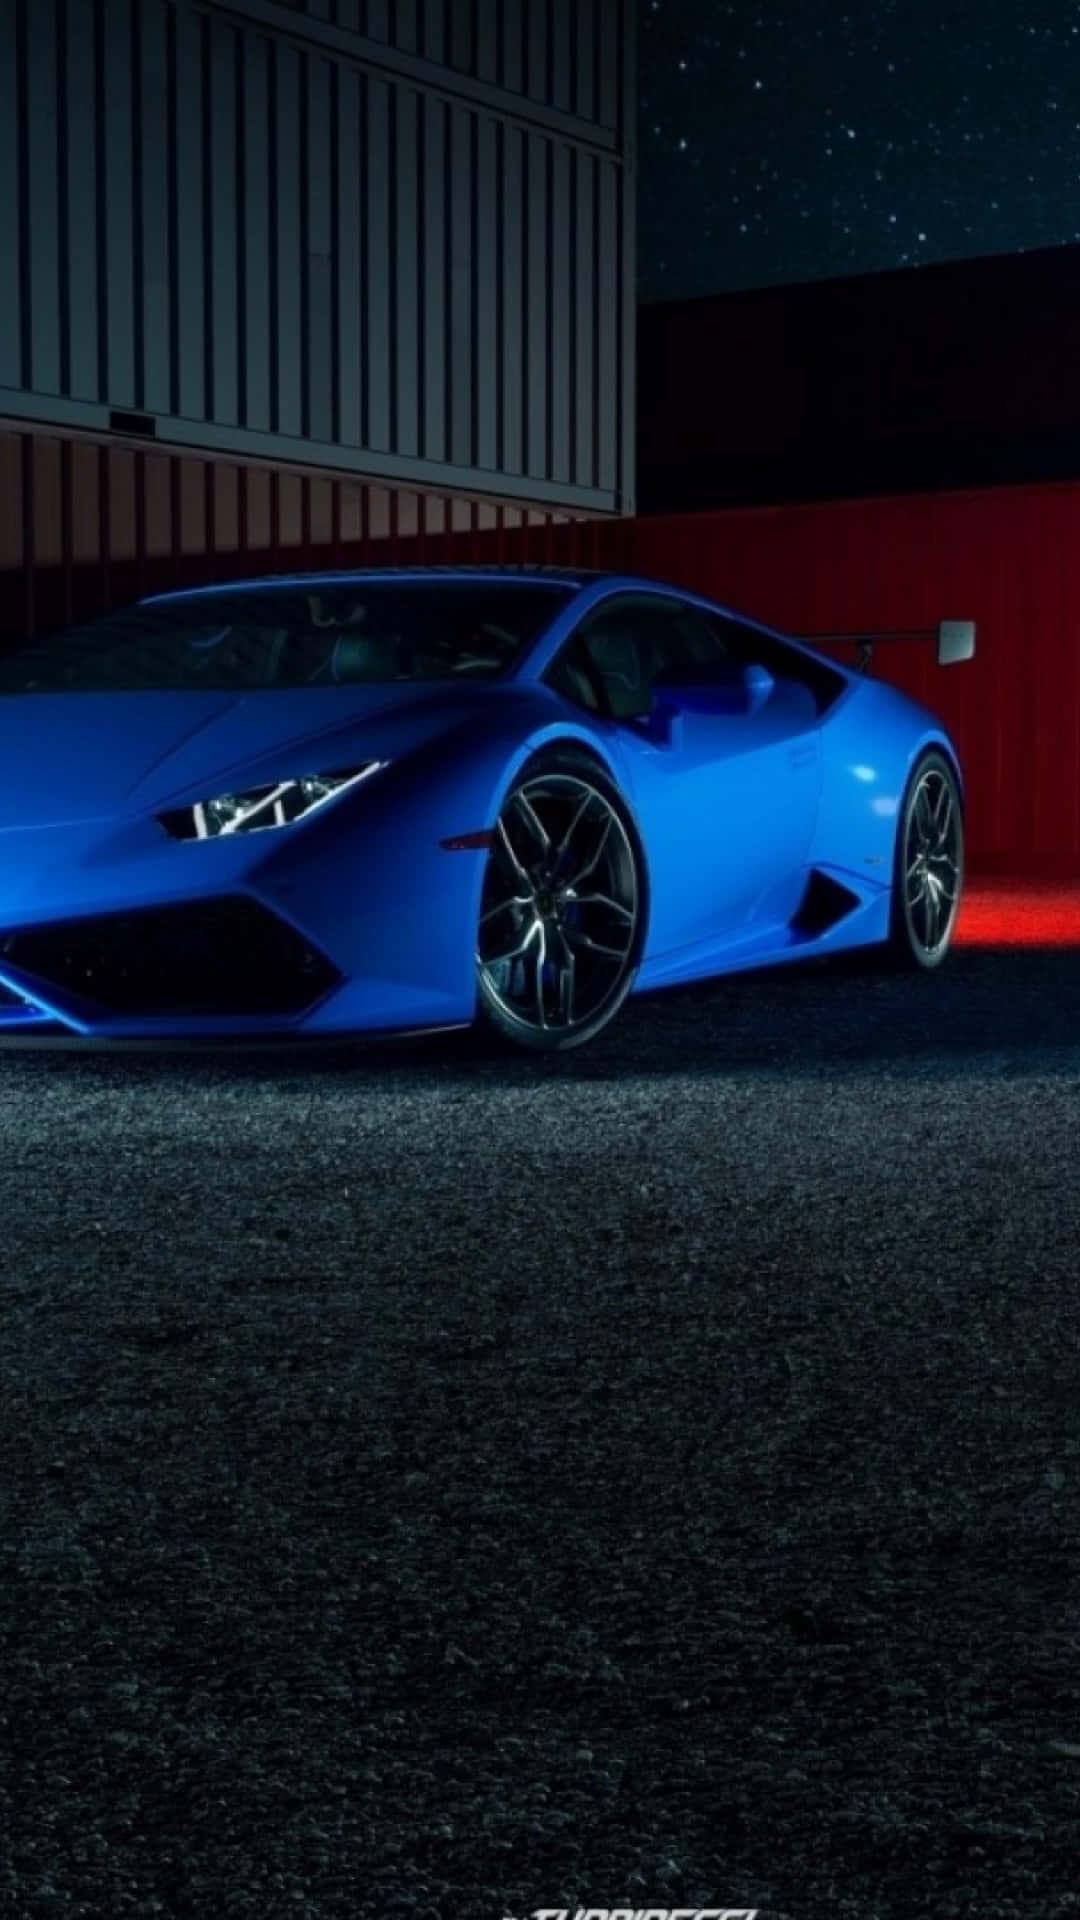 Wageden Unterschied Mit Einem Strahlend Blauen Lamborghini Iphone. Wallpaper